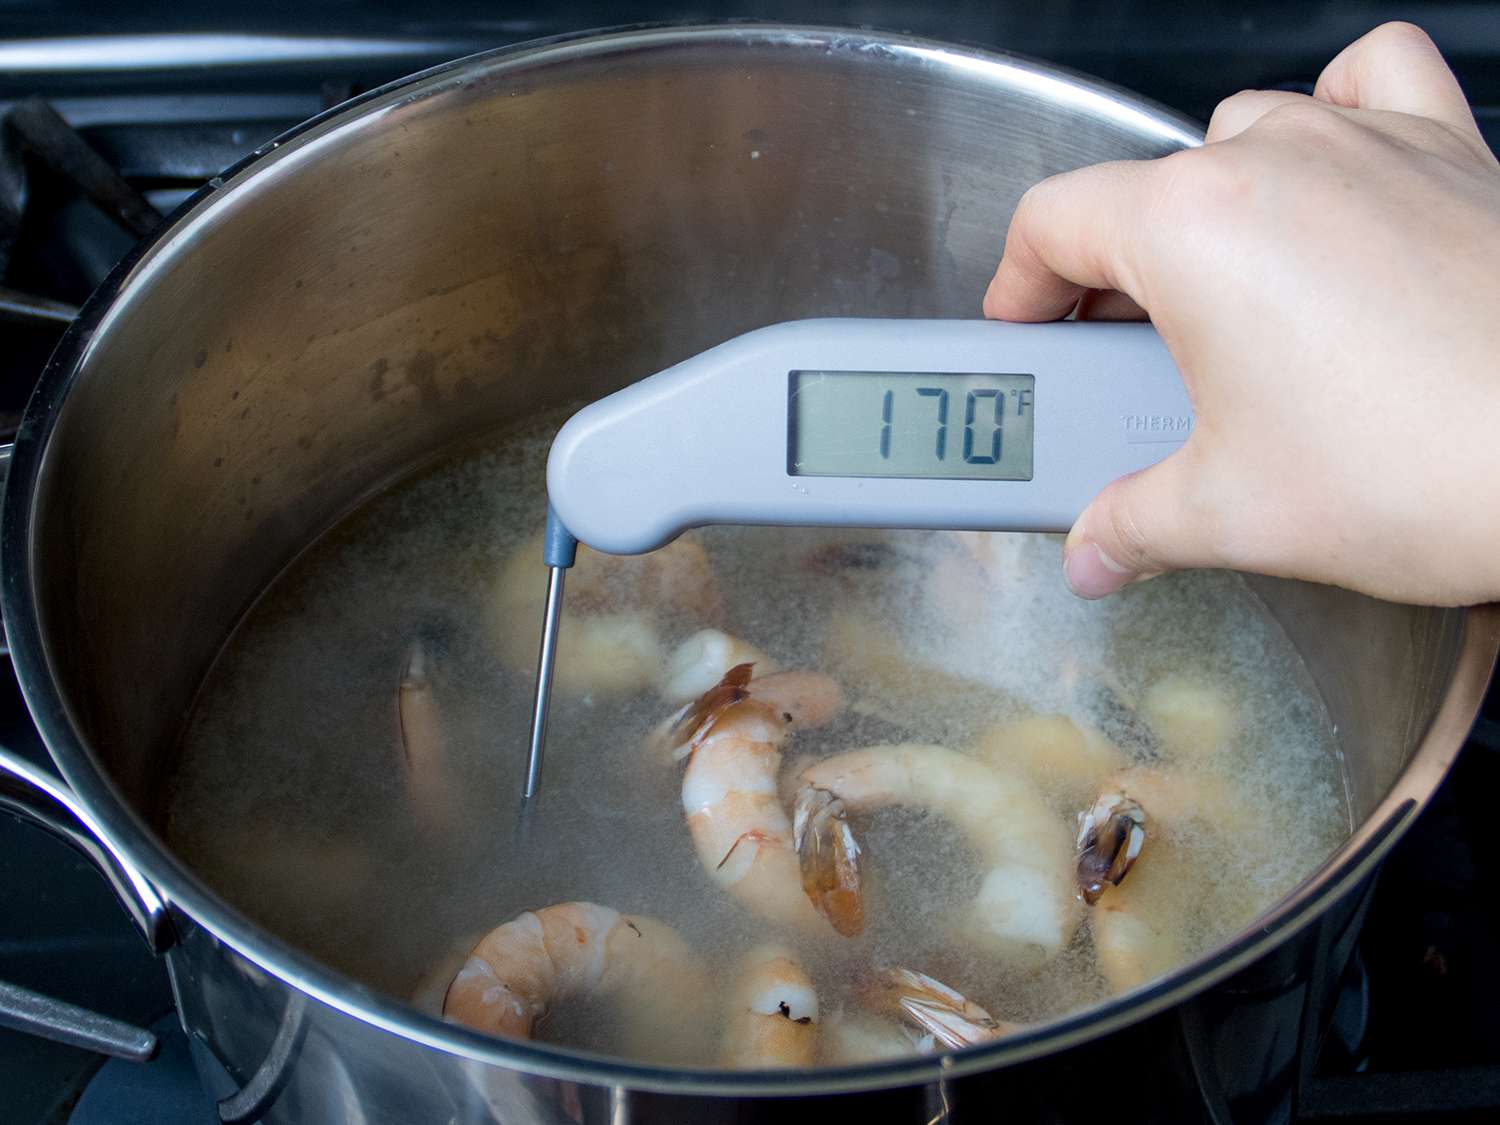 温度计在煮熟的虾锅中显示170华氏度的温度。gydF4y2Ba